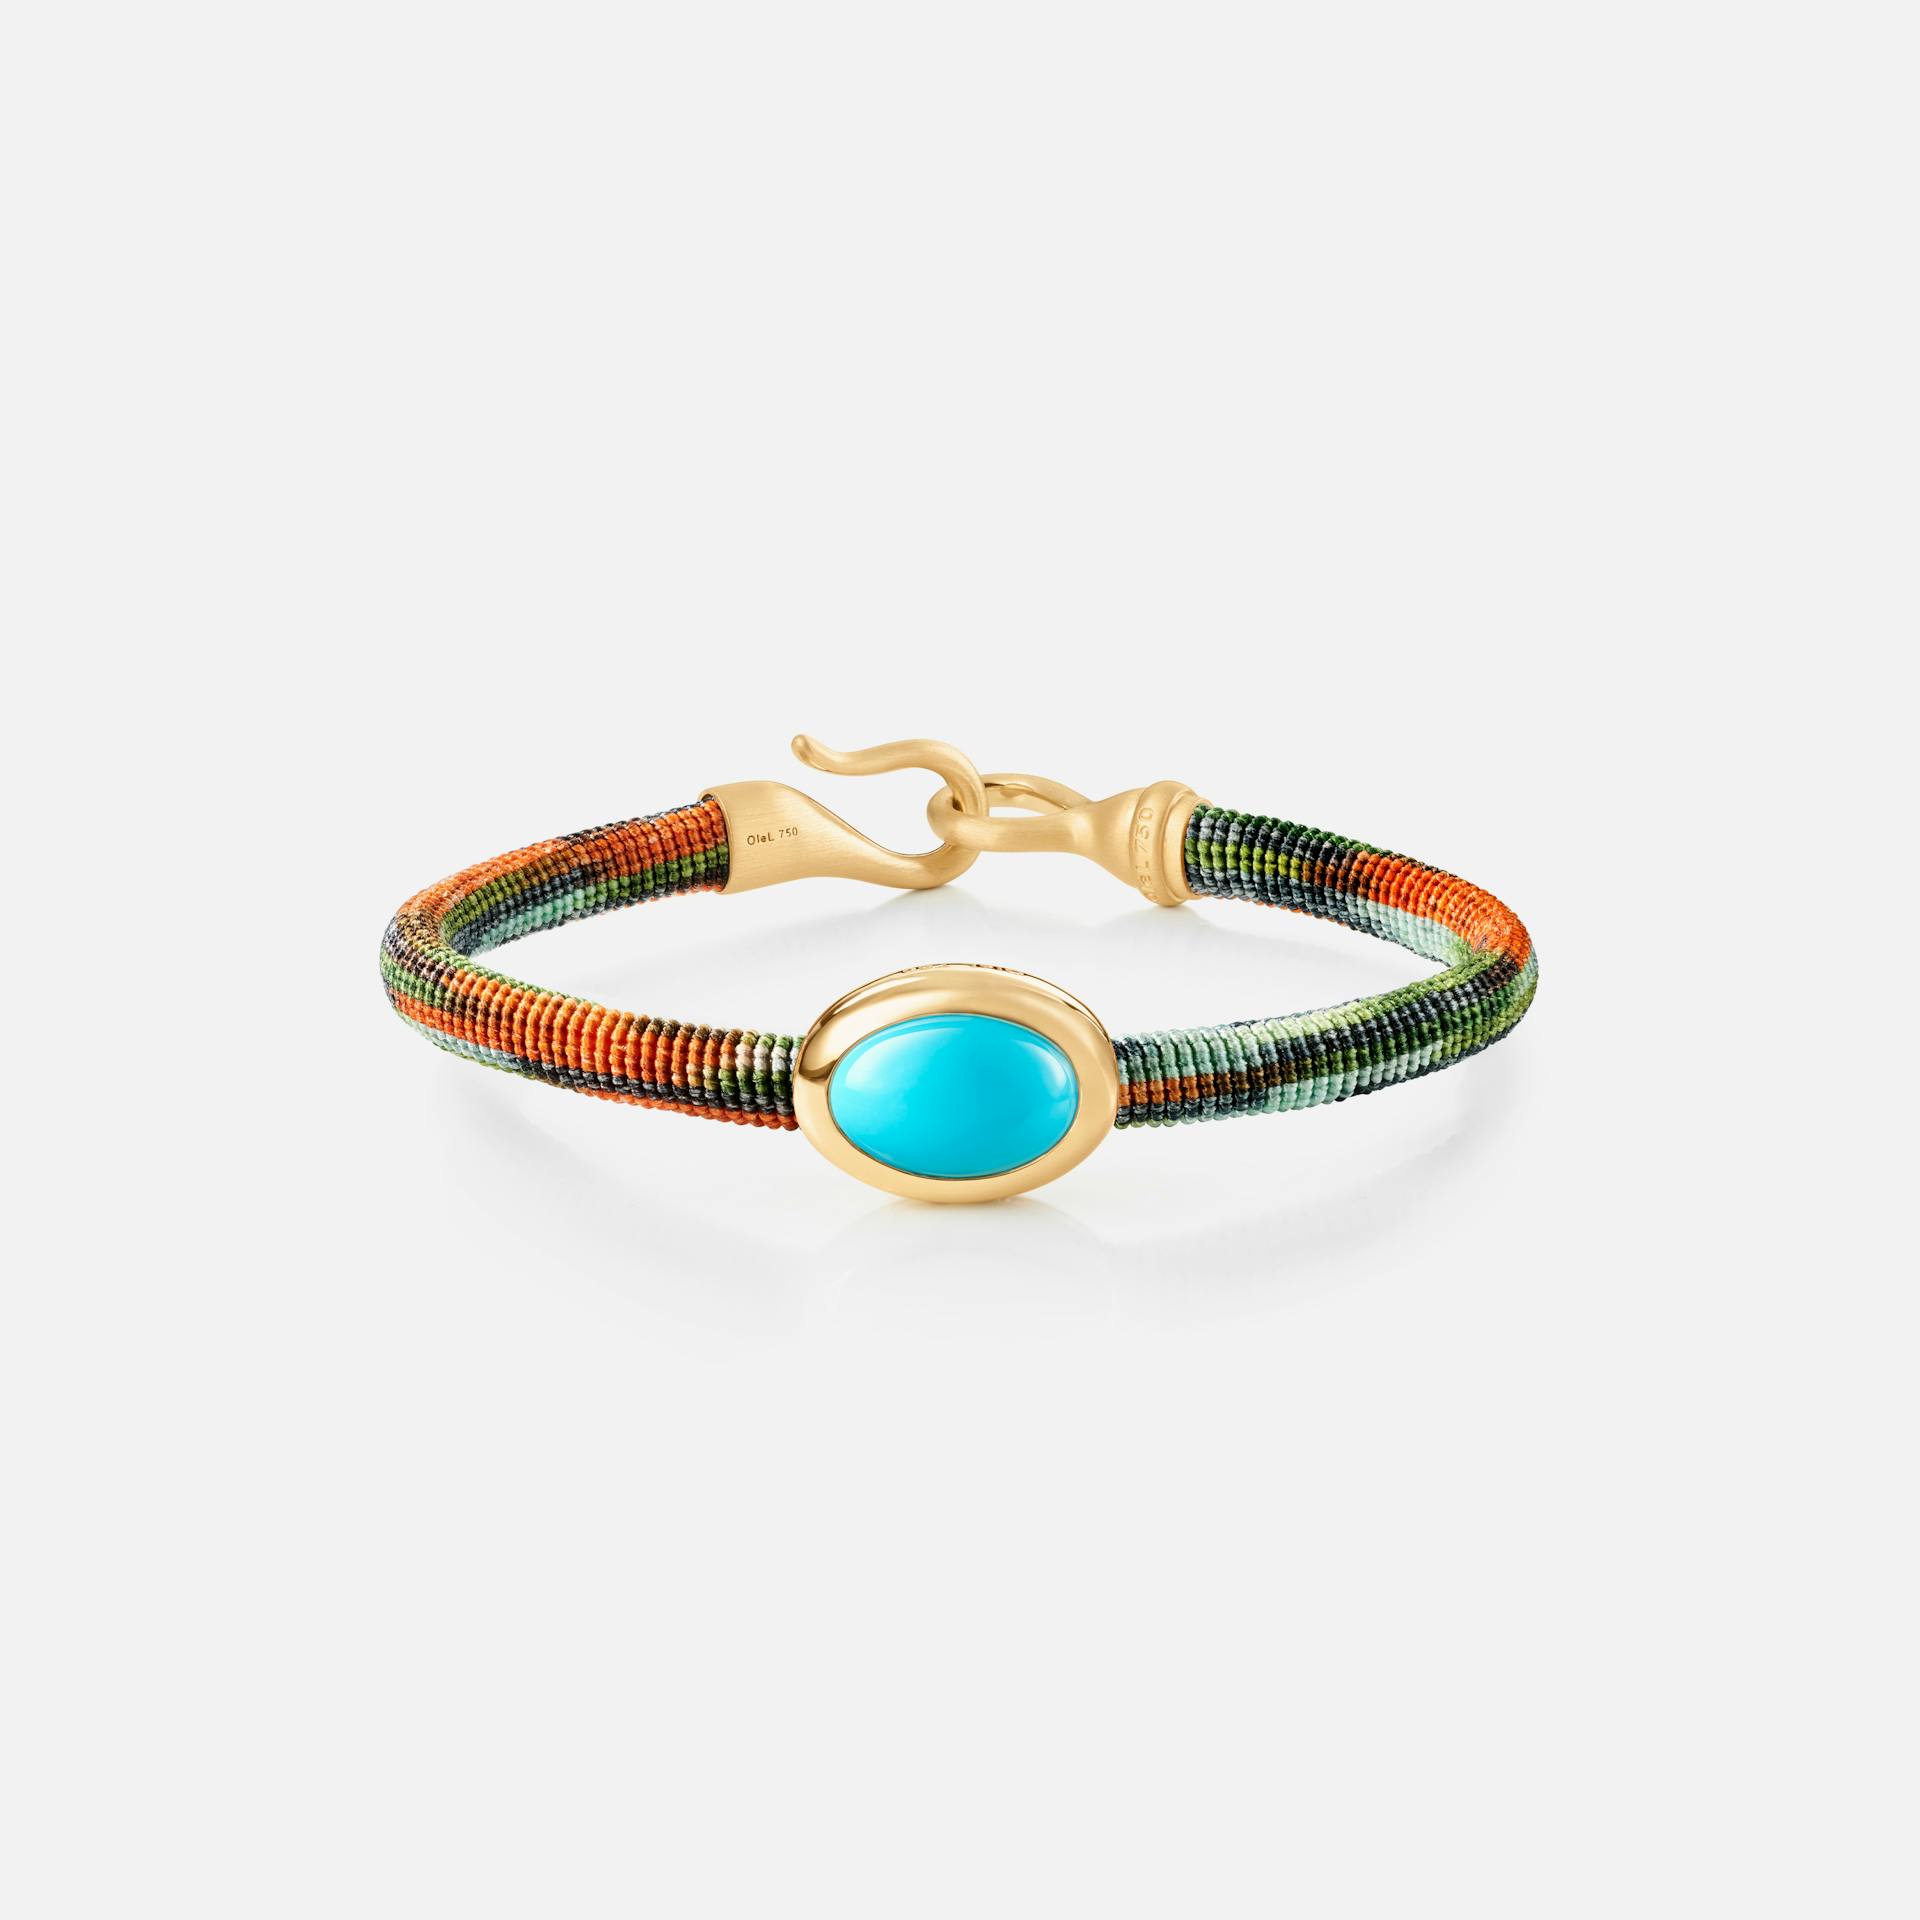 Life Bracelet with turquoise 6 mm 18k guld og turkis med Tropic snor